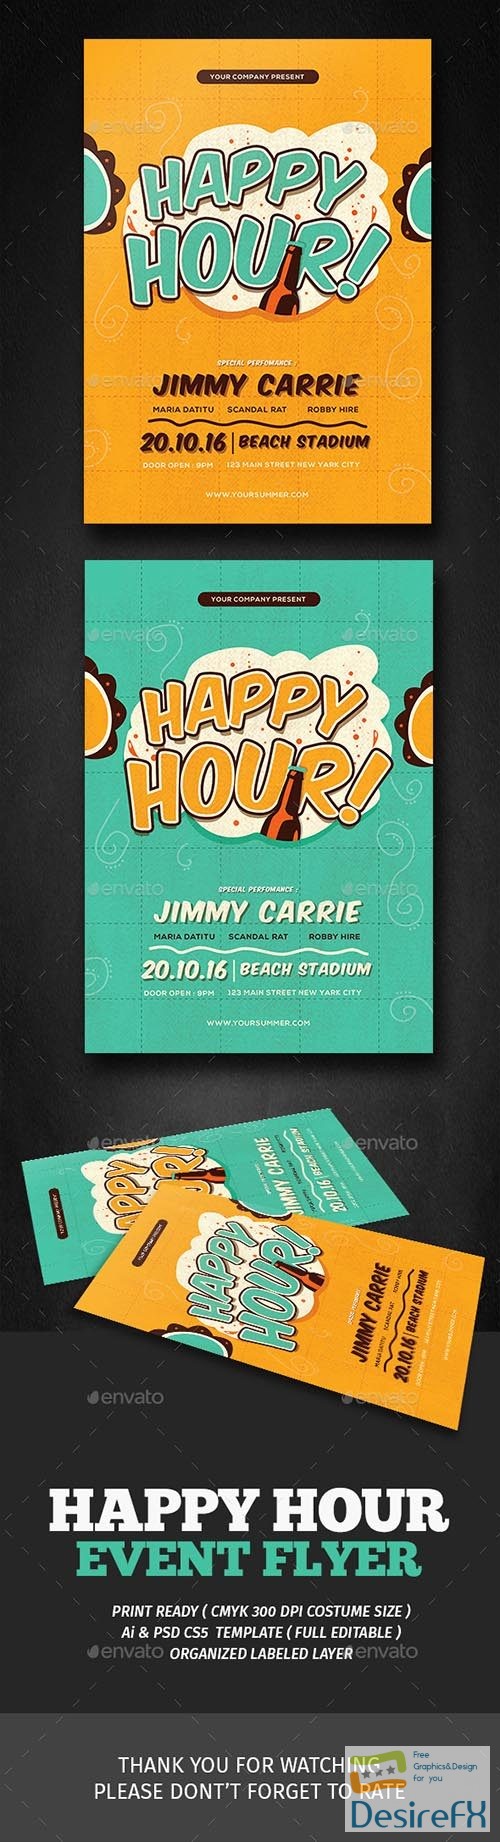 Retro Happy Hour Flyer 18007930